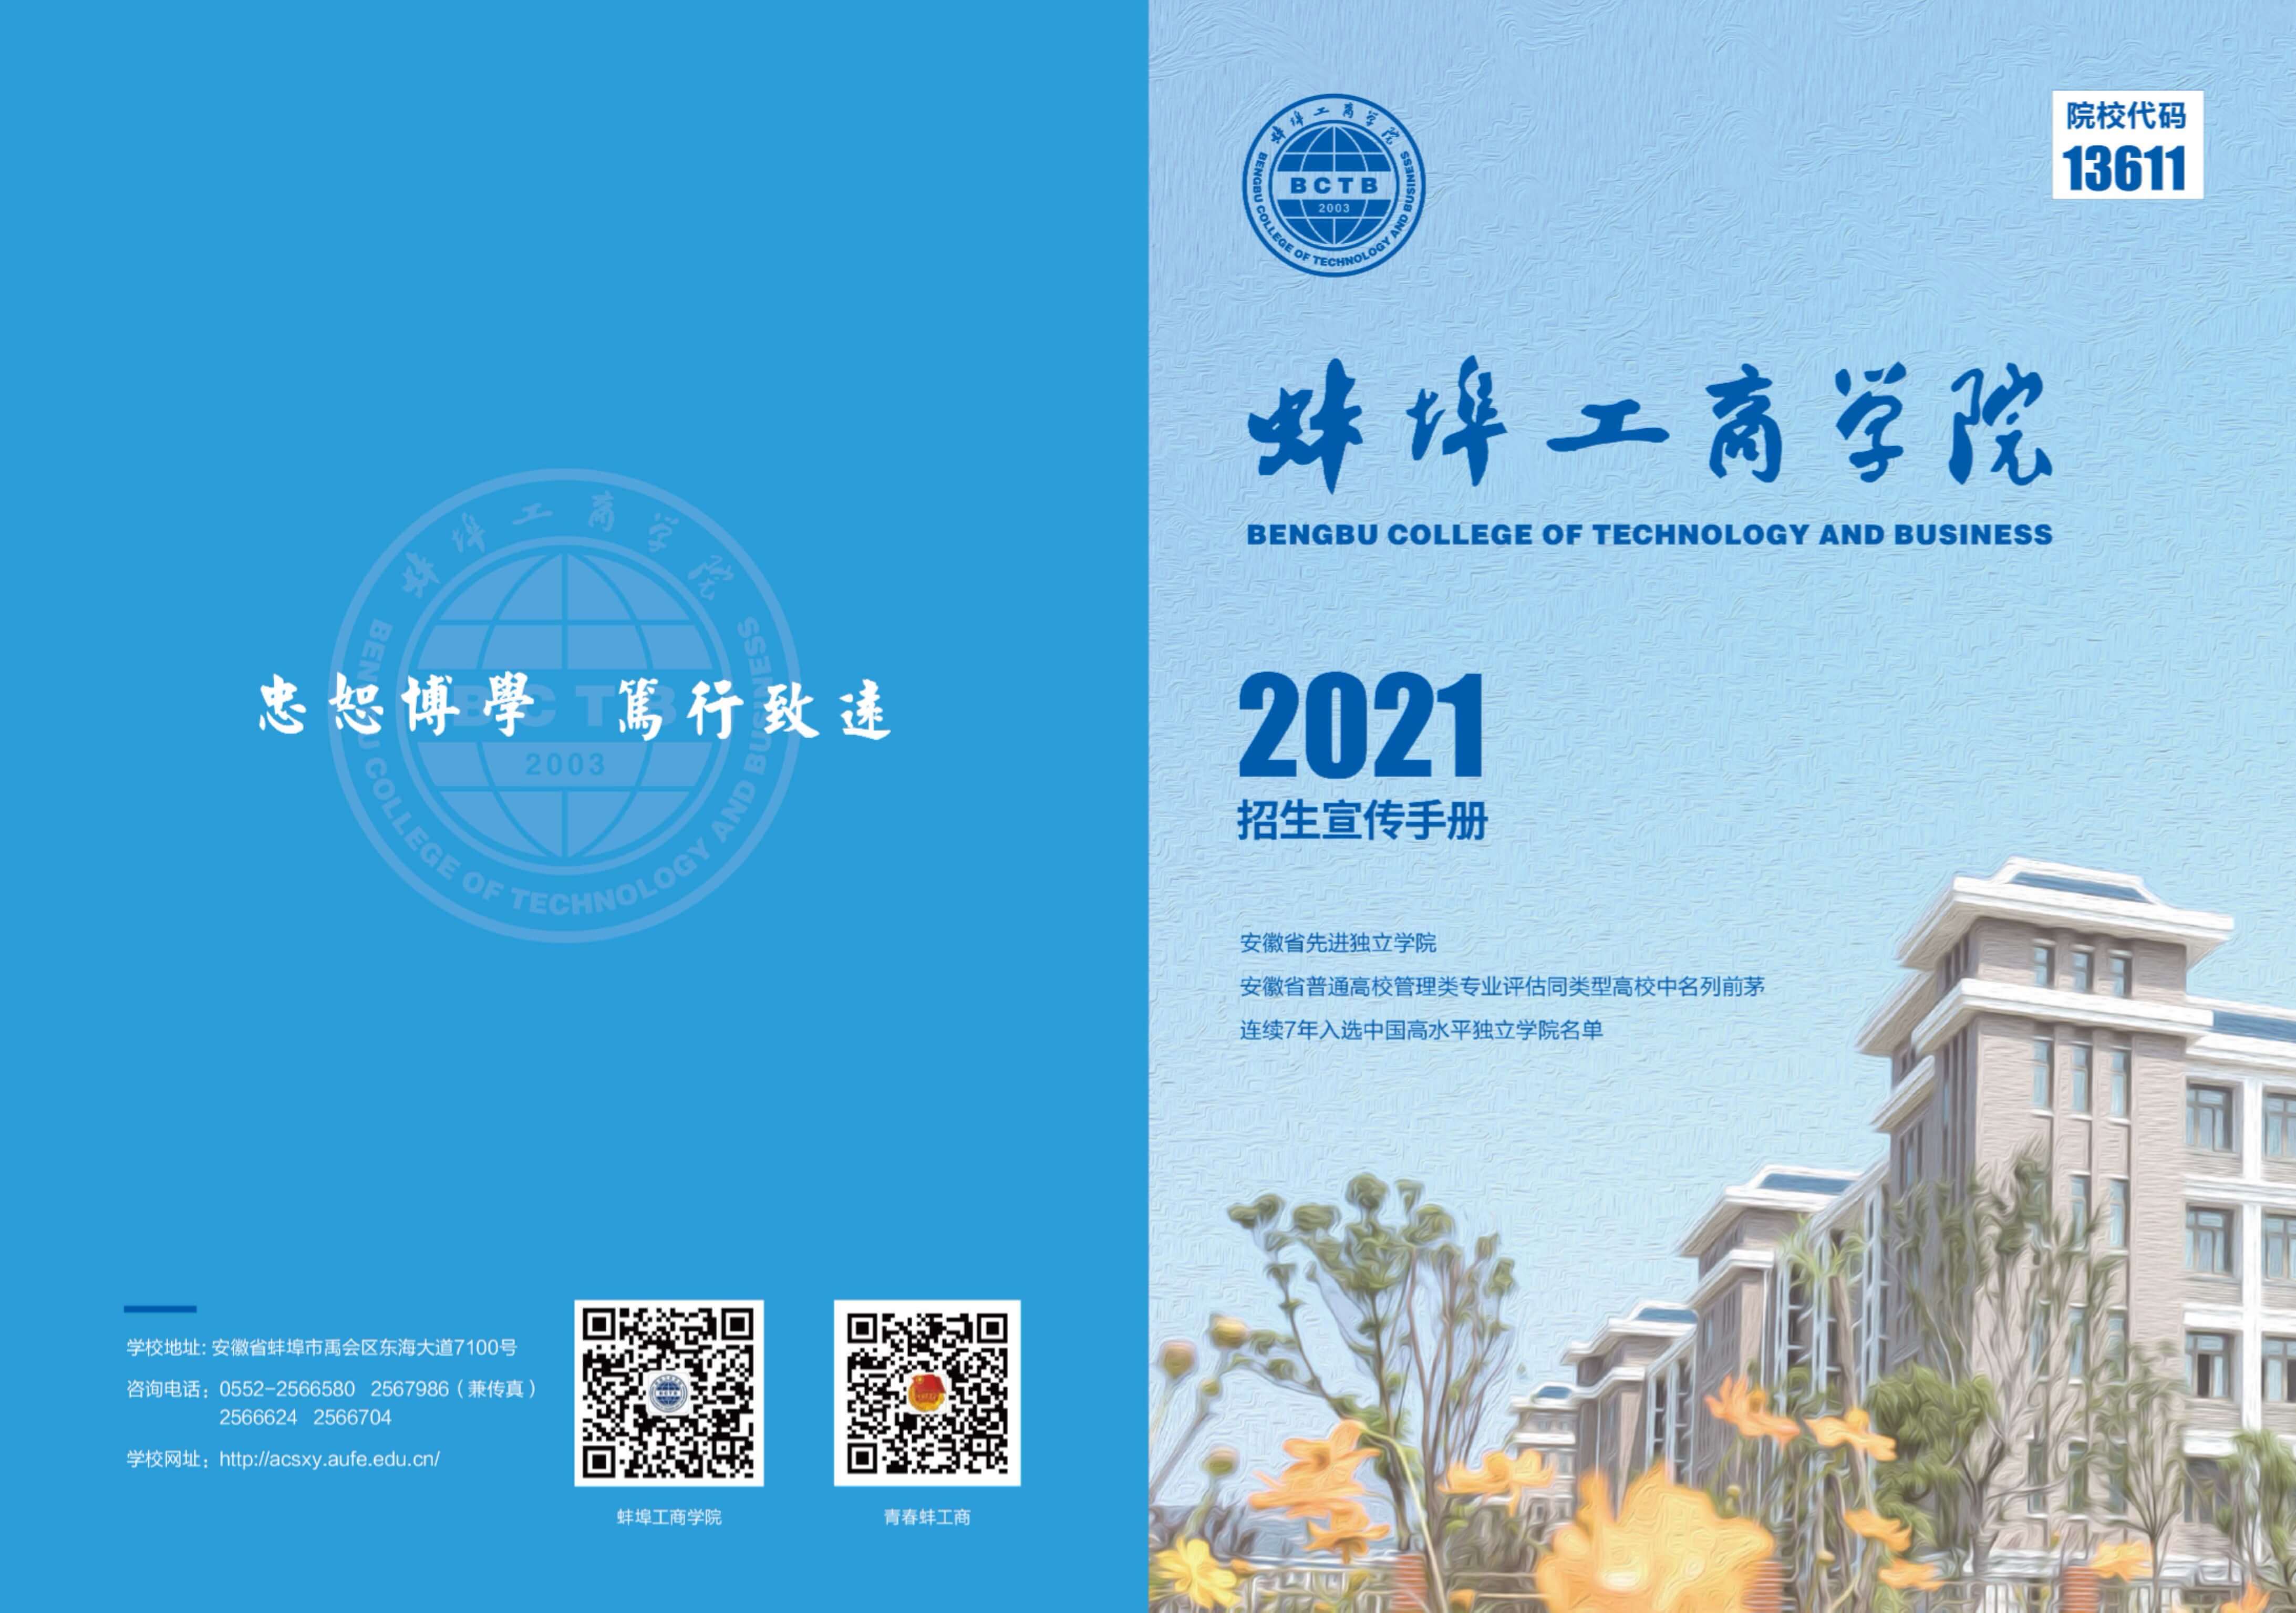 蚌埠工商学院2021年招生简章_1.jpg